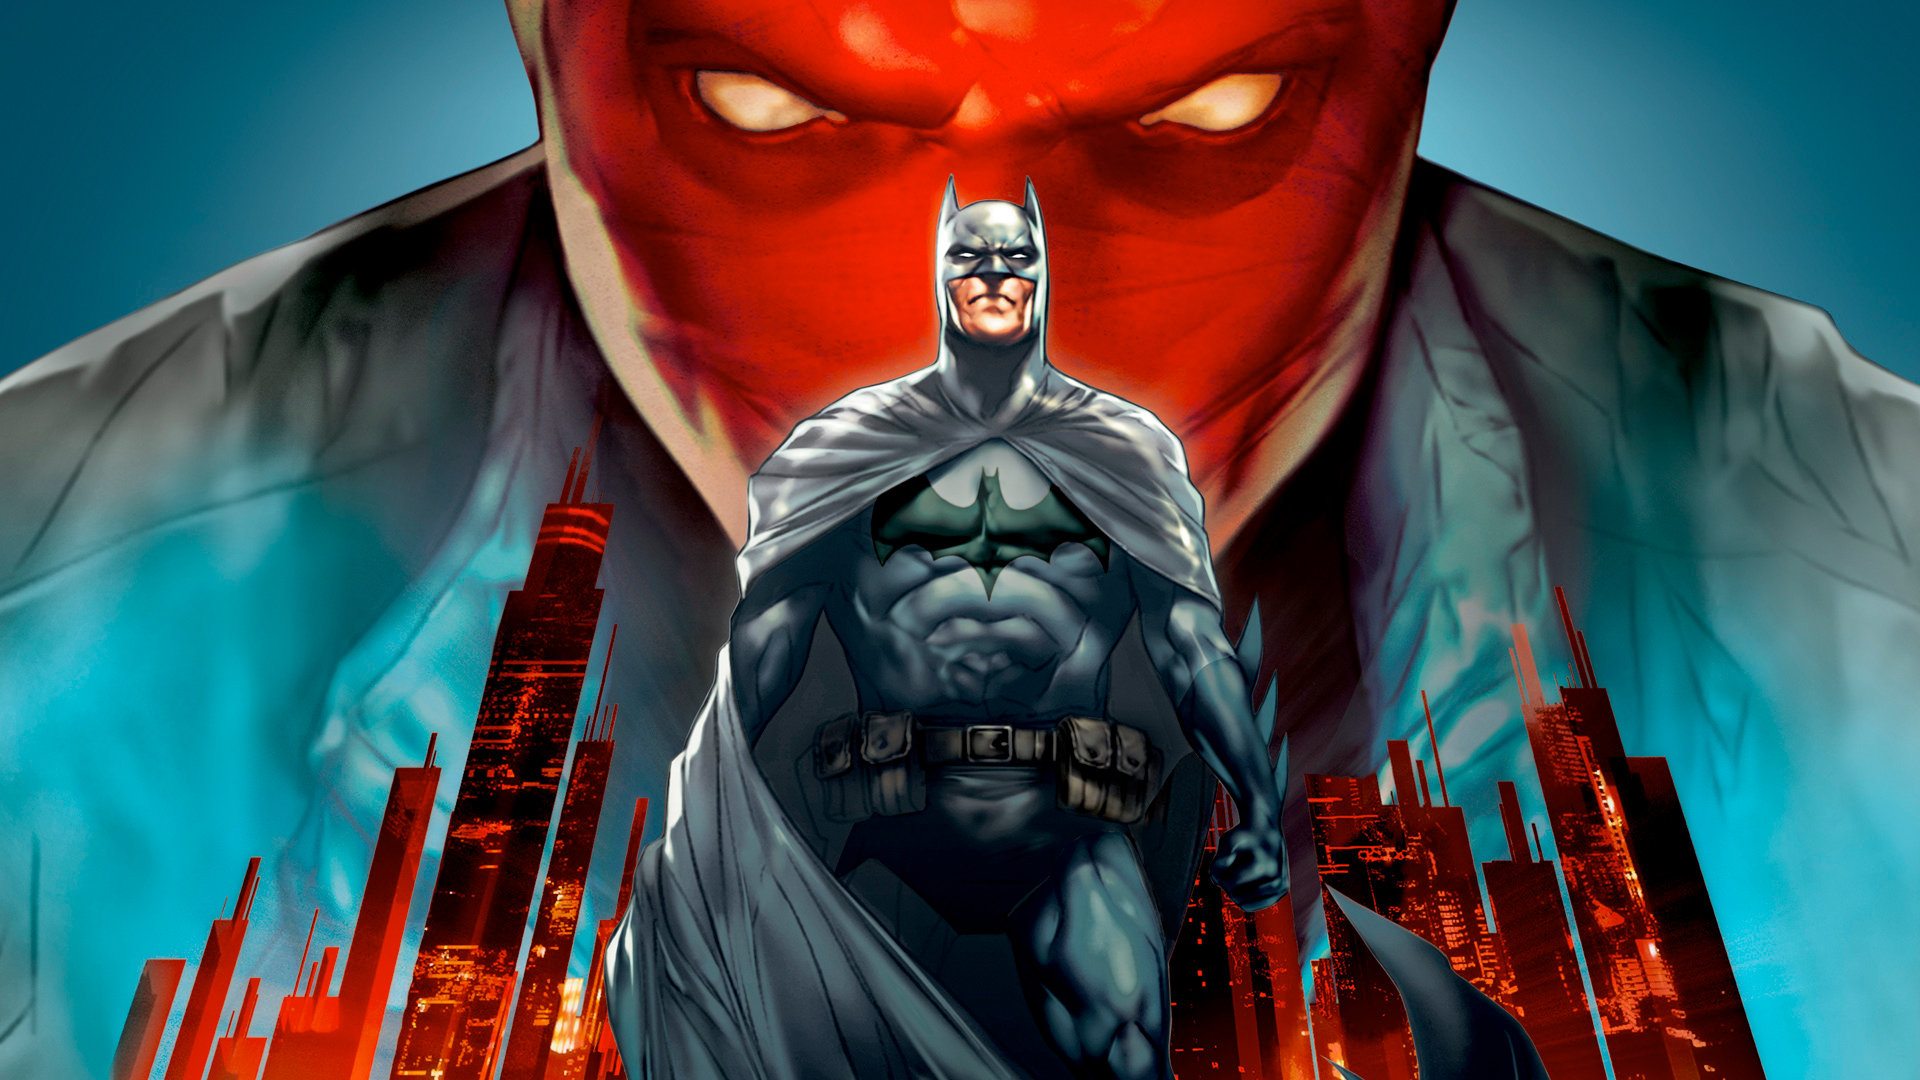 Ben Affleck Batman Movie - Batman Red Hood Background , HD Wallpaper & Backgrounds